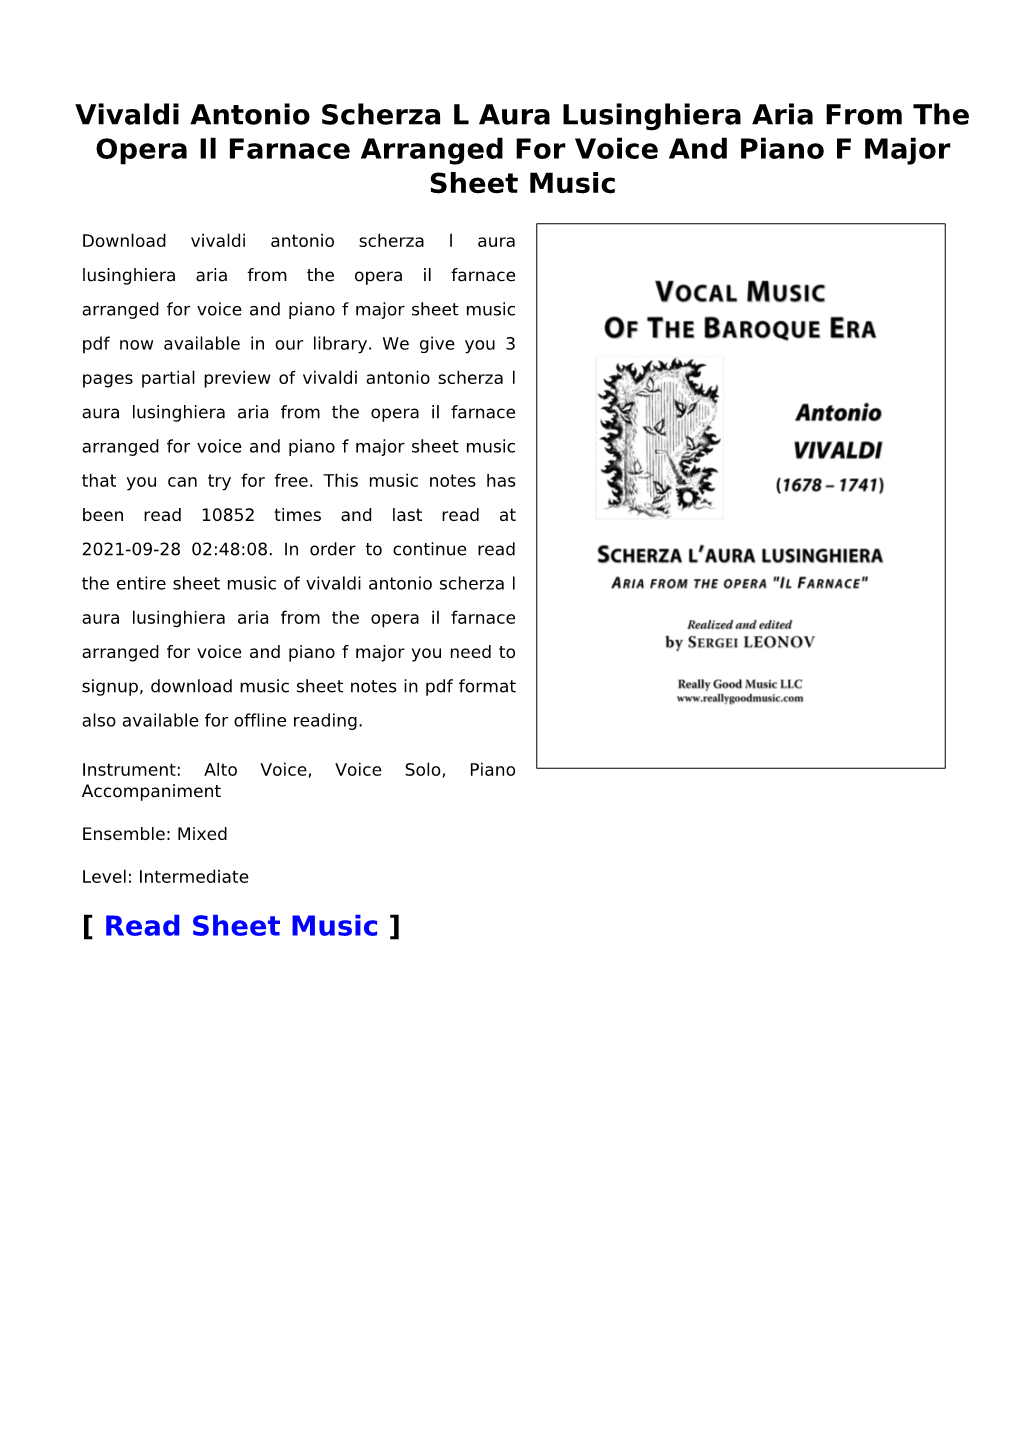 Vivaldi Antonio Scherza L Aura Lusinghiera Aria from the Opera Il Farnace Arranged for Voice and Piano F Major Sheet Music